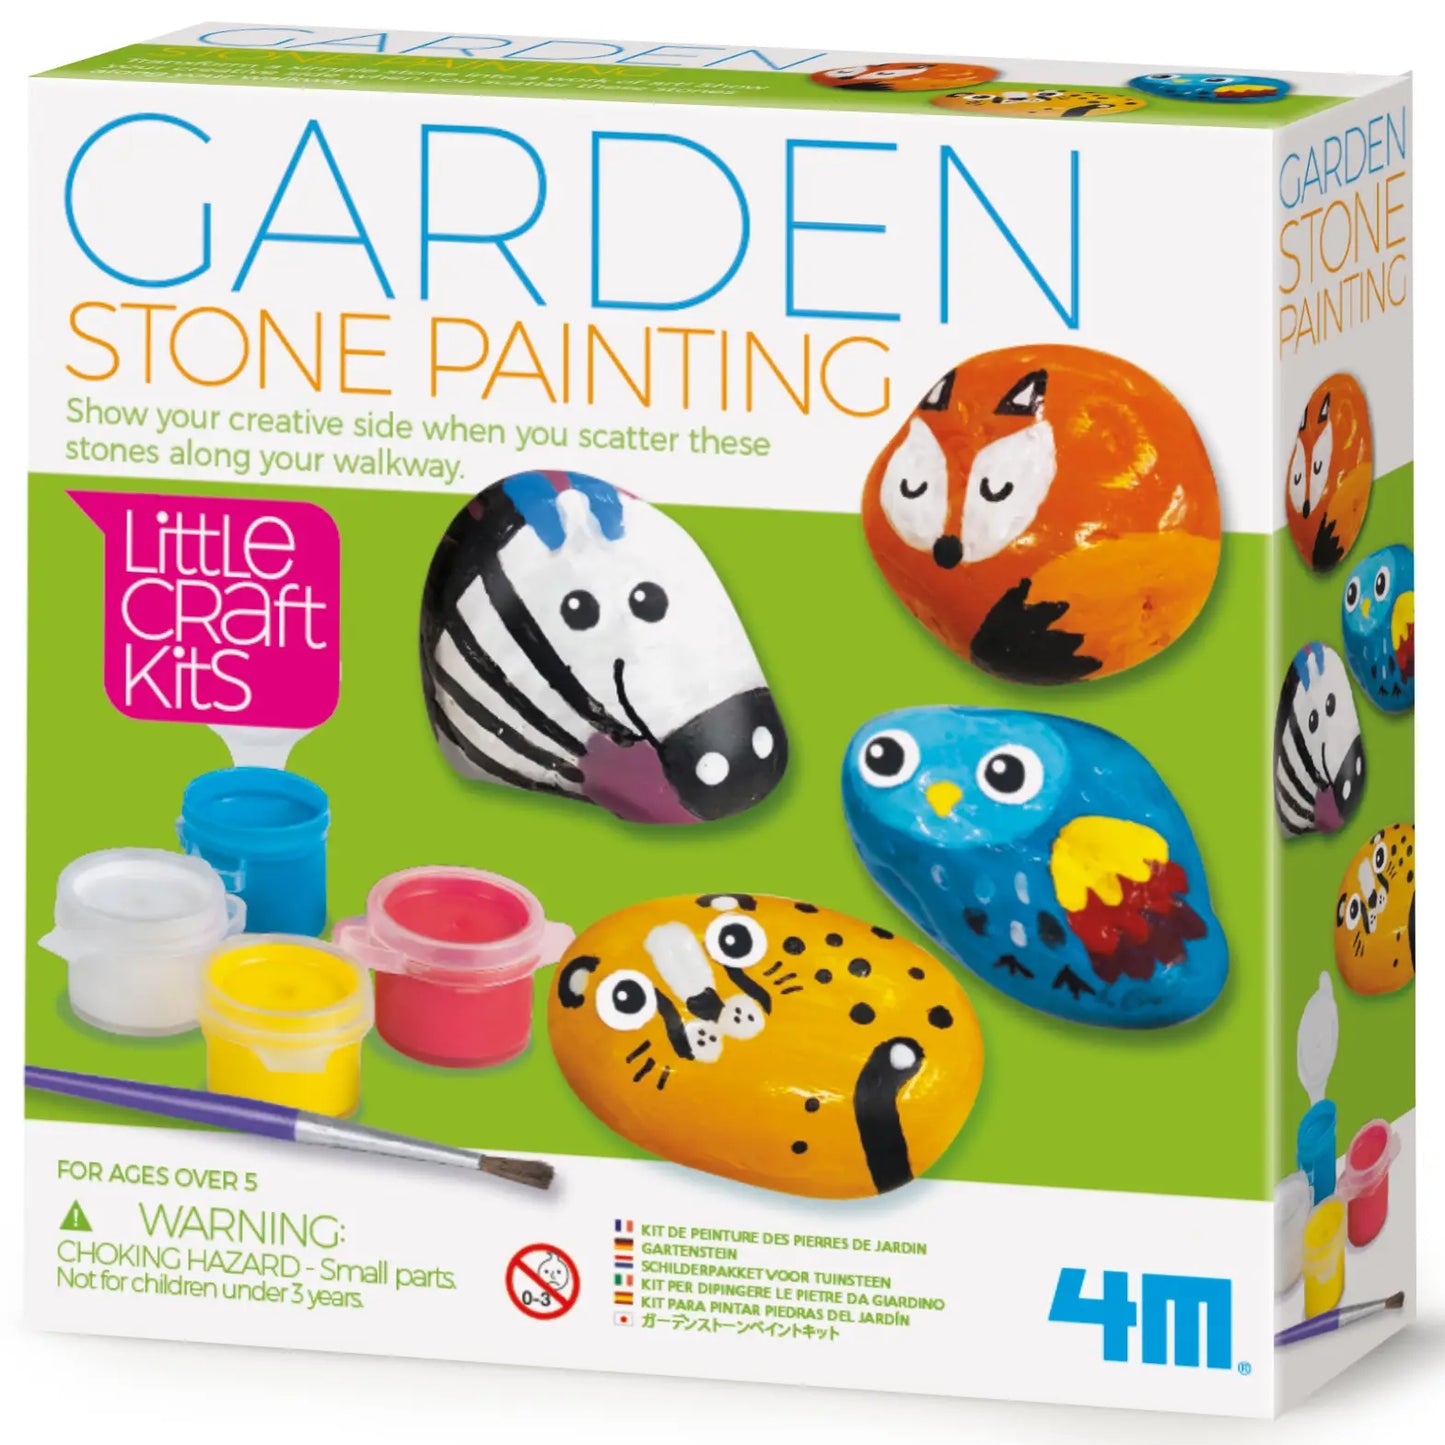 Garden Stone Painting Kit